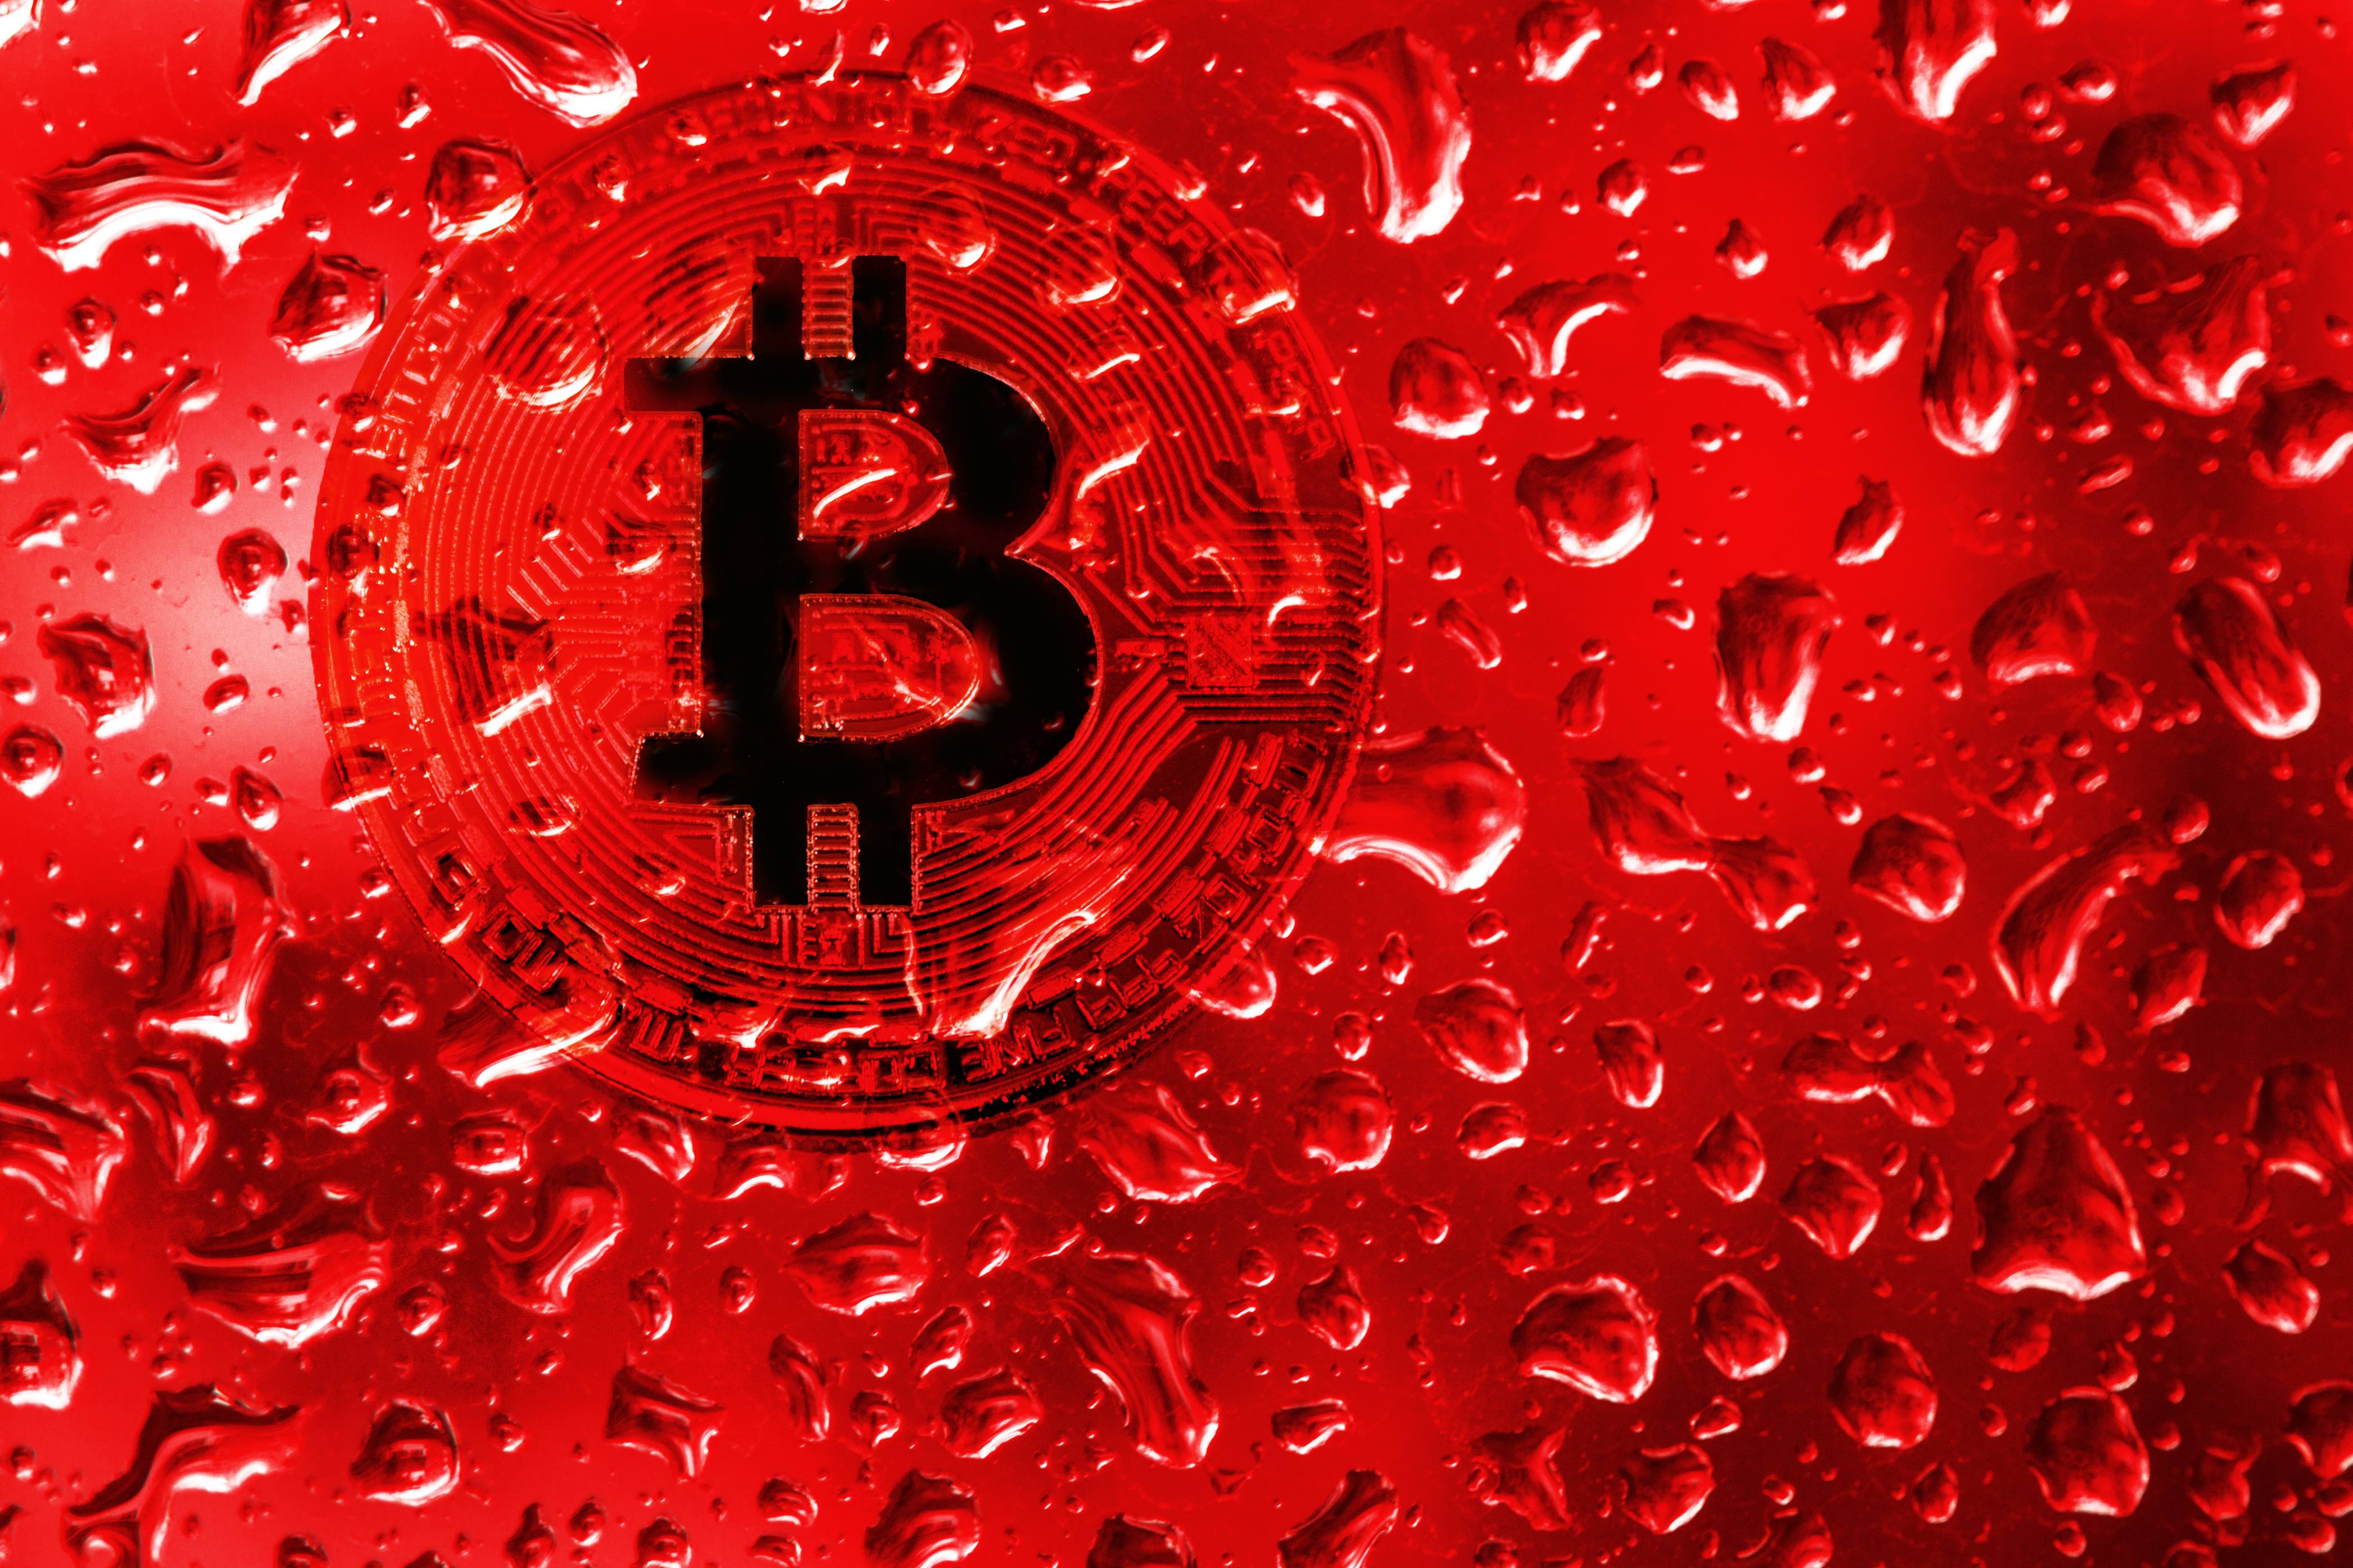 “Phải khi nào trên phố máu đã chảy thành từng dòng đã”: Lí do vì sao lúc này vẫn chưa phải thời điểm để mua Bitcoin